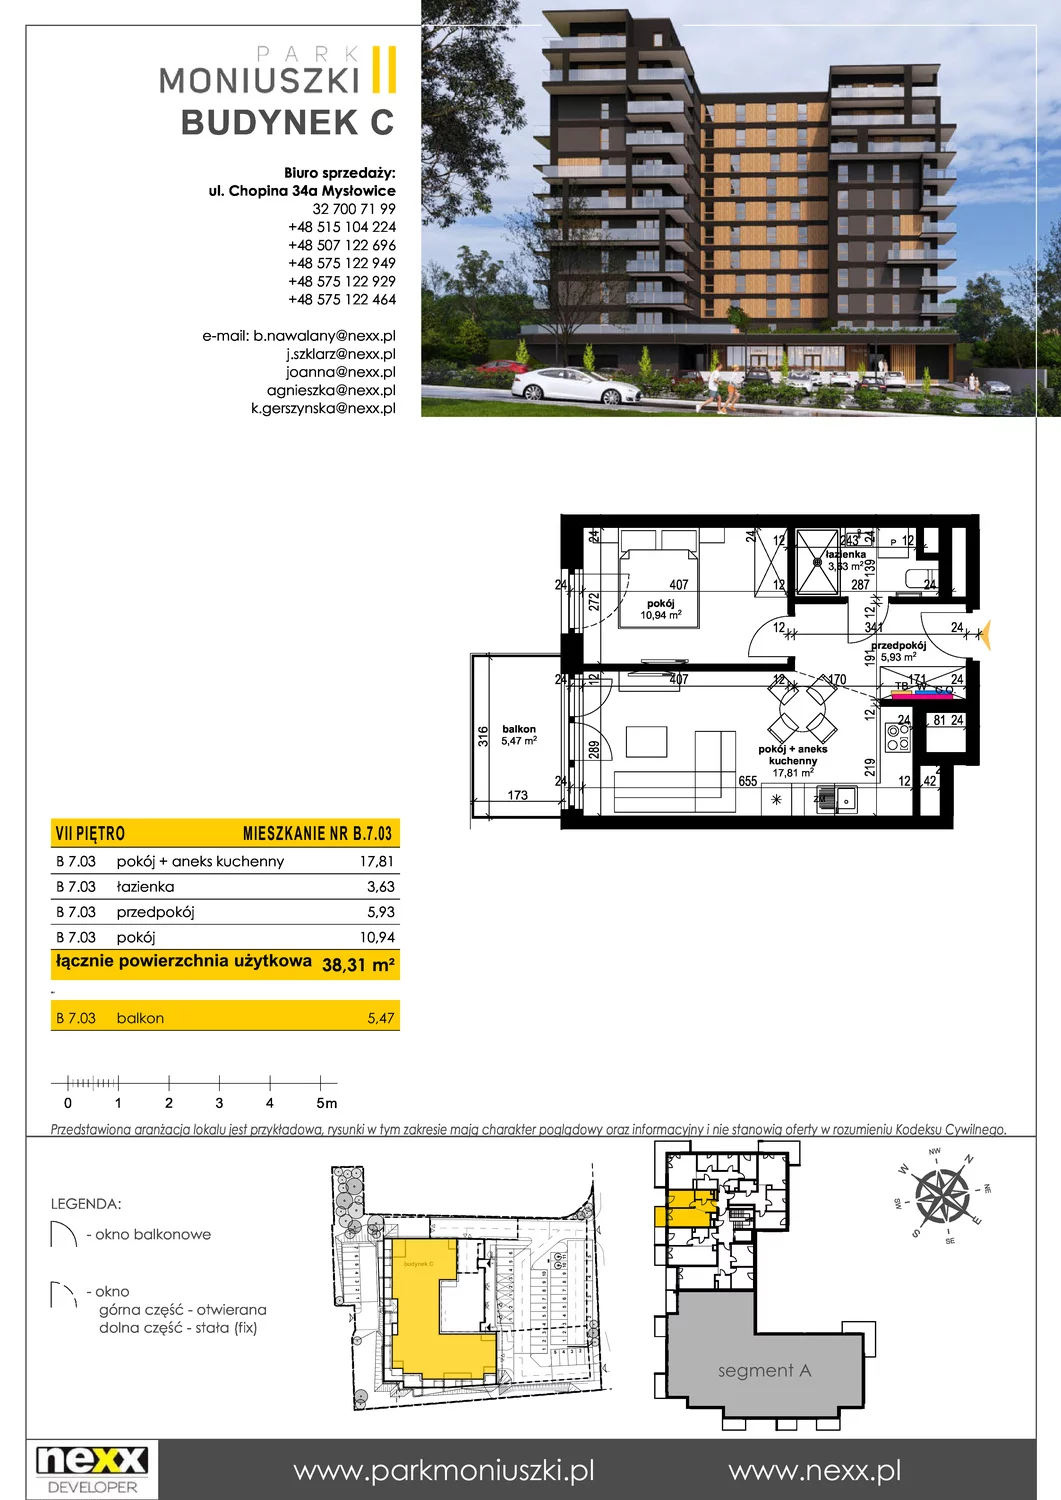 Mieszkanie 38,31 m², piętro 7, oferta nr B 7.03, Osiedle Park Moniuszki, Mysłowice, ul. Okrzei / Wielka Skotnica